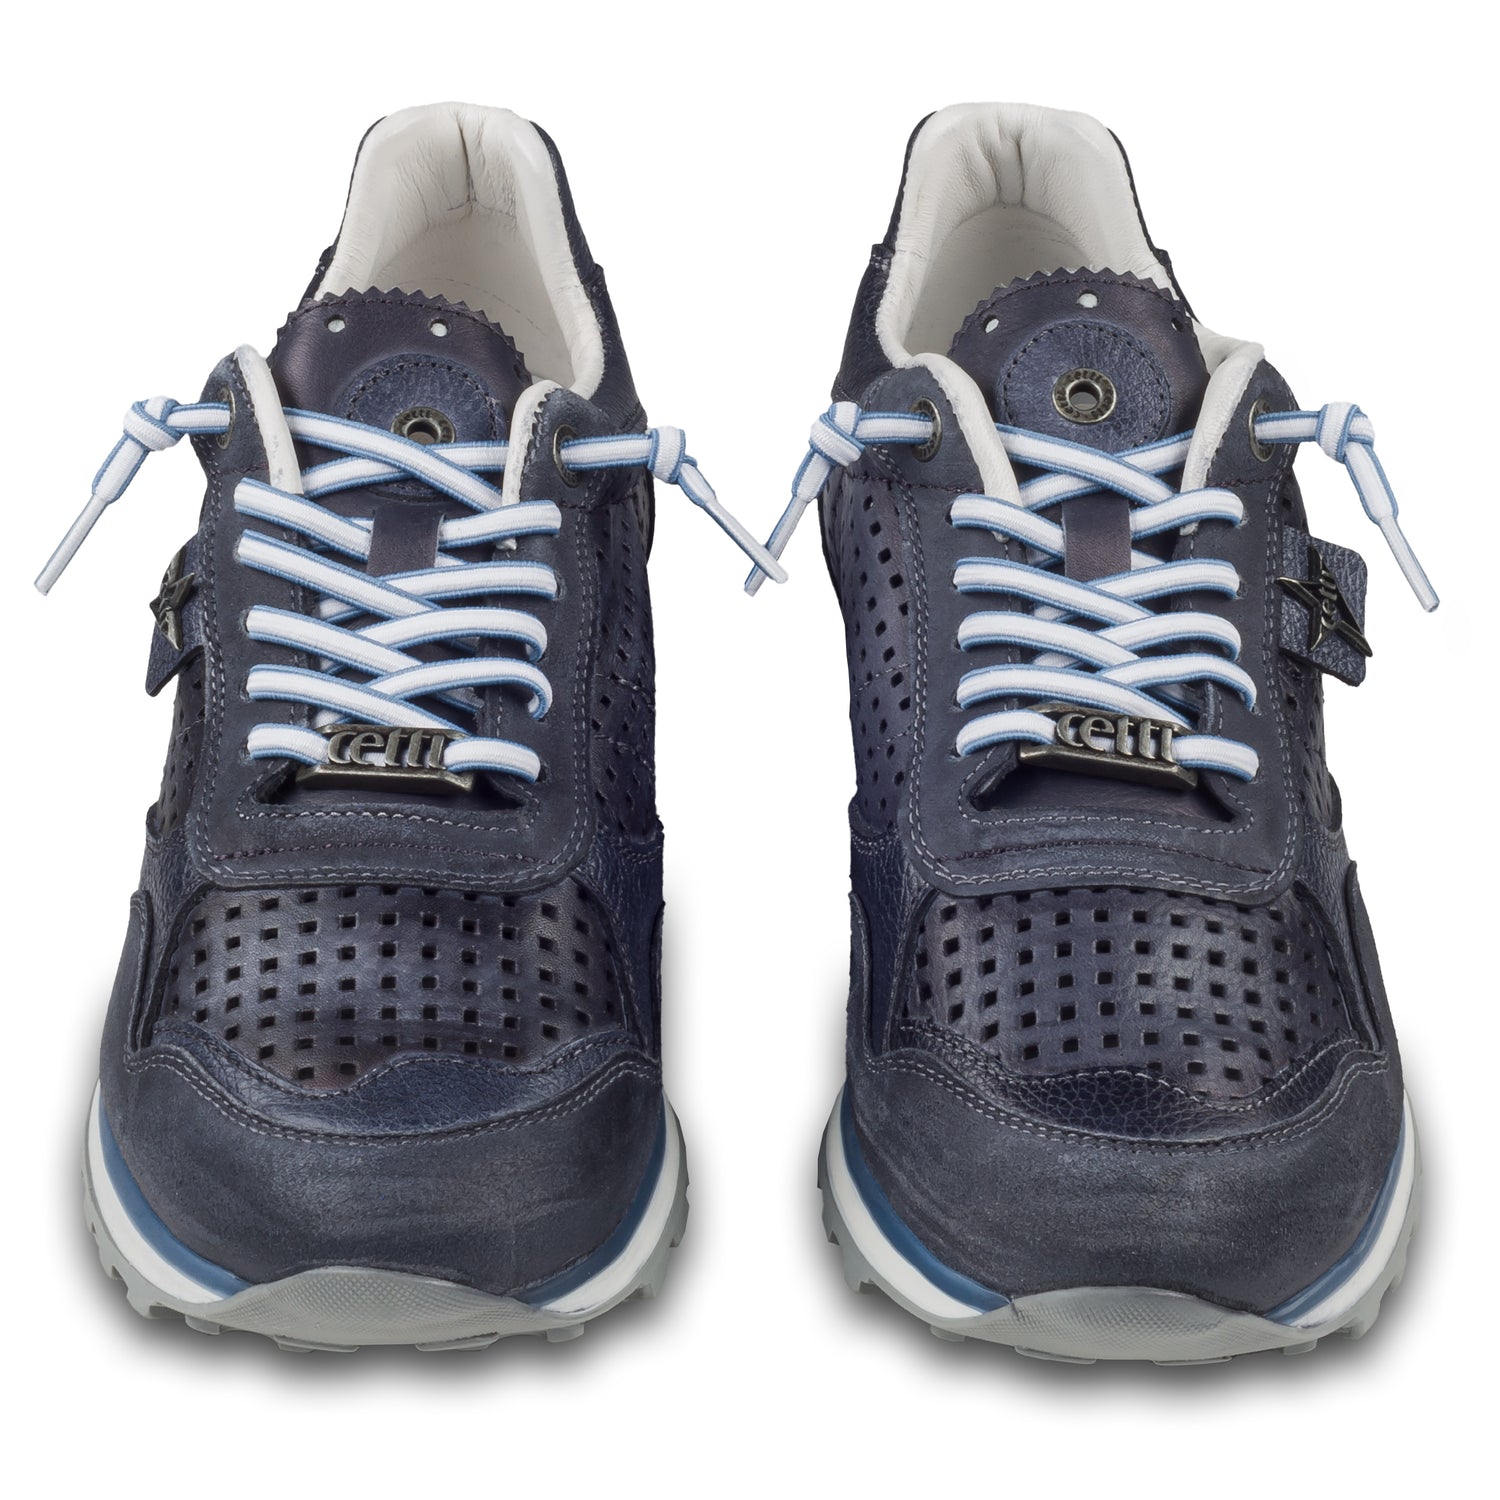 CETTI Herren Leder Sneaker, Modell „C848“ in dunkel blau / grau (used tin antracite), Made in Spain. Ansicht der Ferse und Sohlenunterseite. Paarweise Ansicht von vorne.  